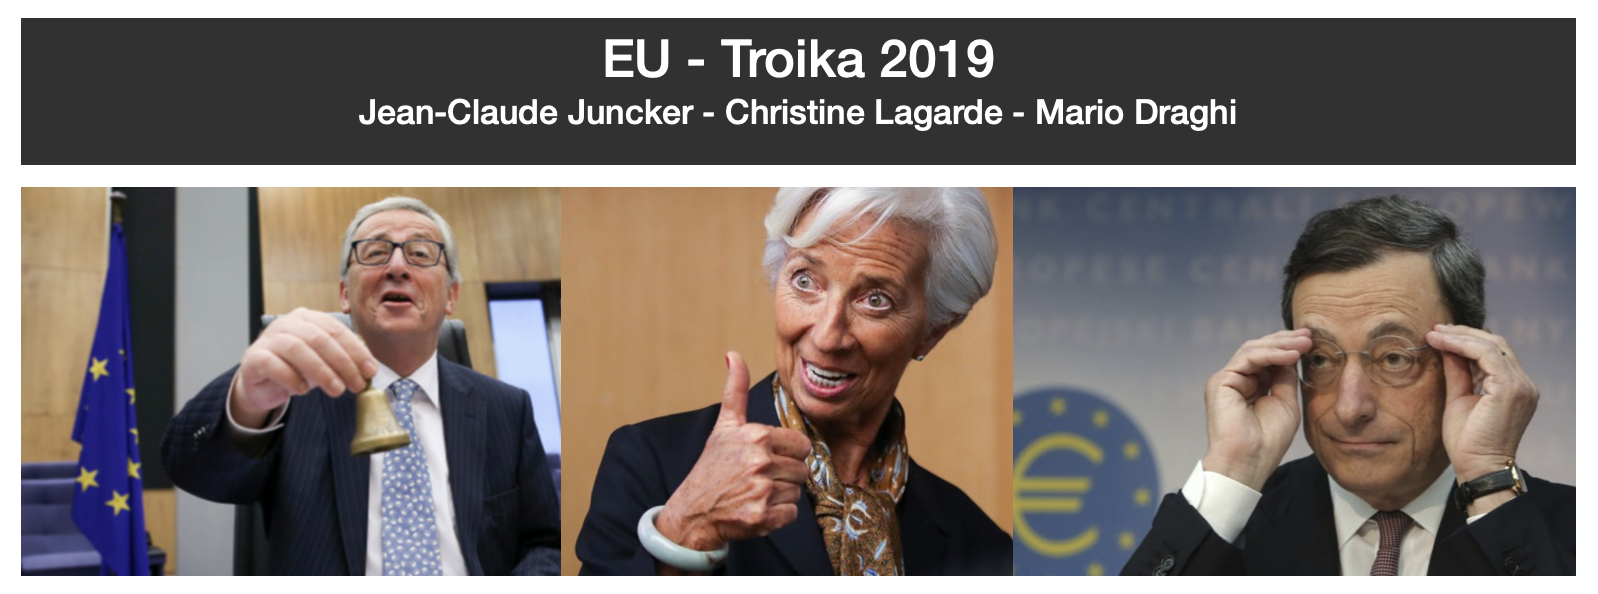 EU Troika 2019